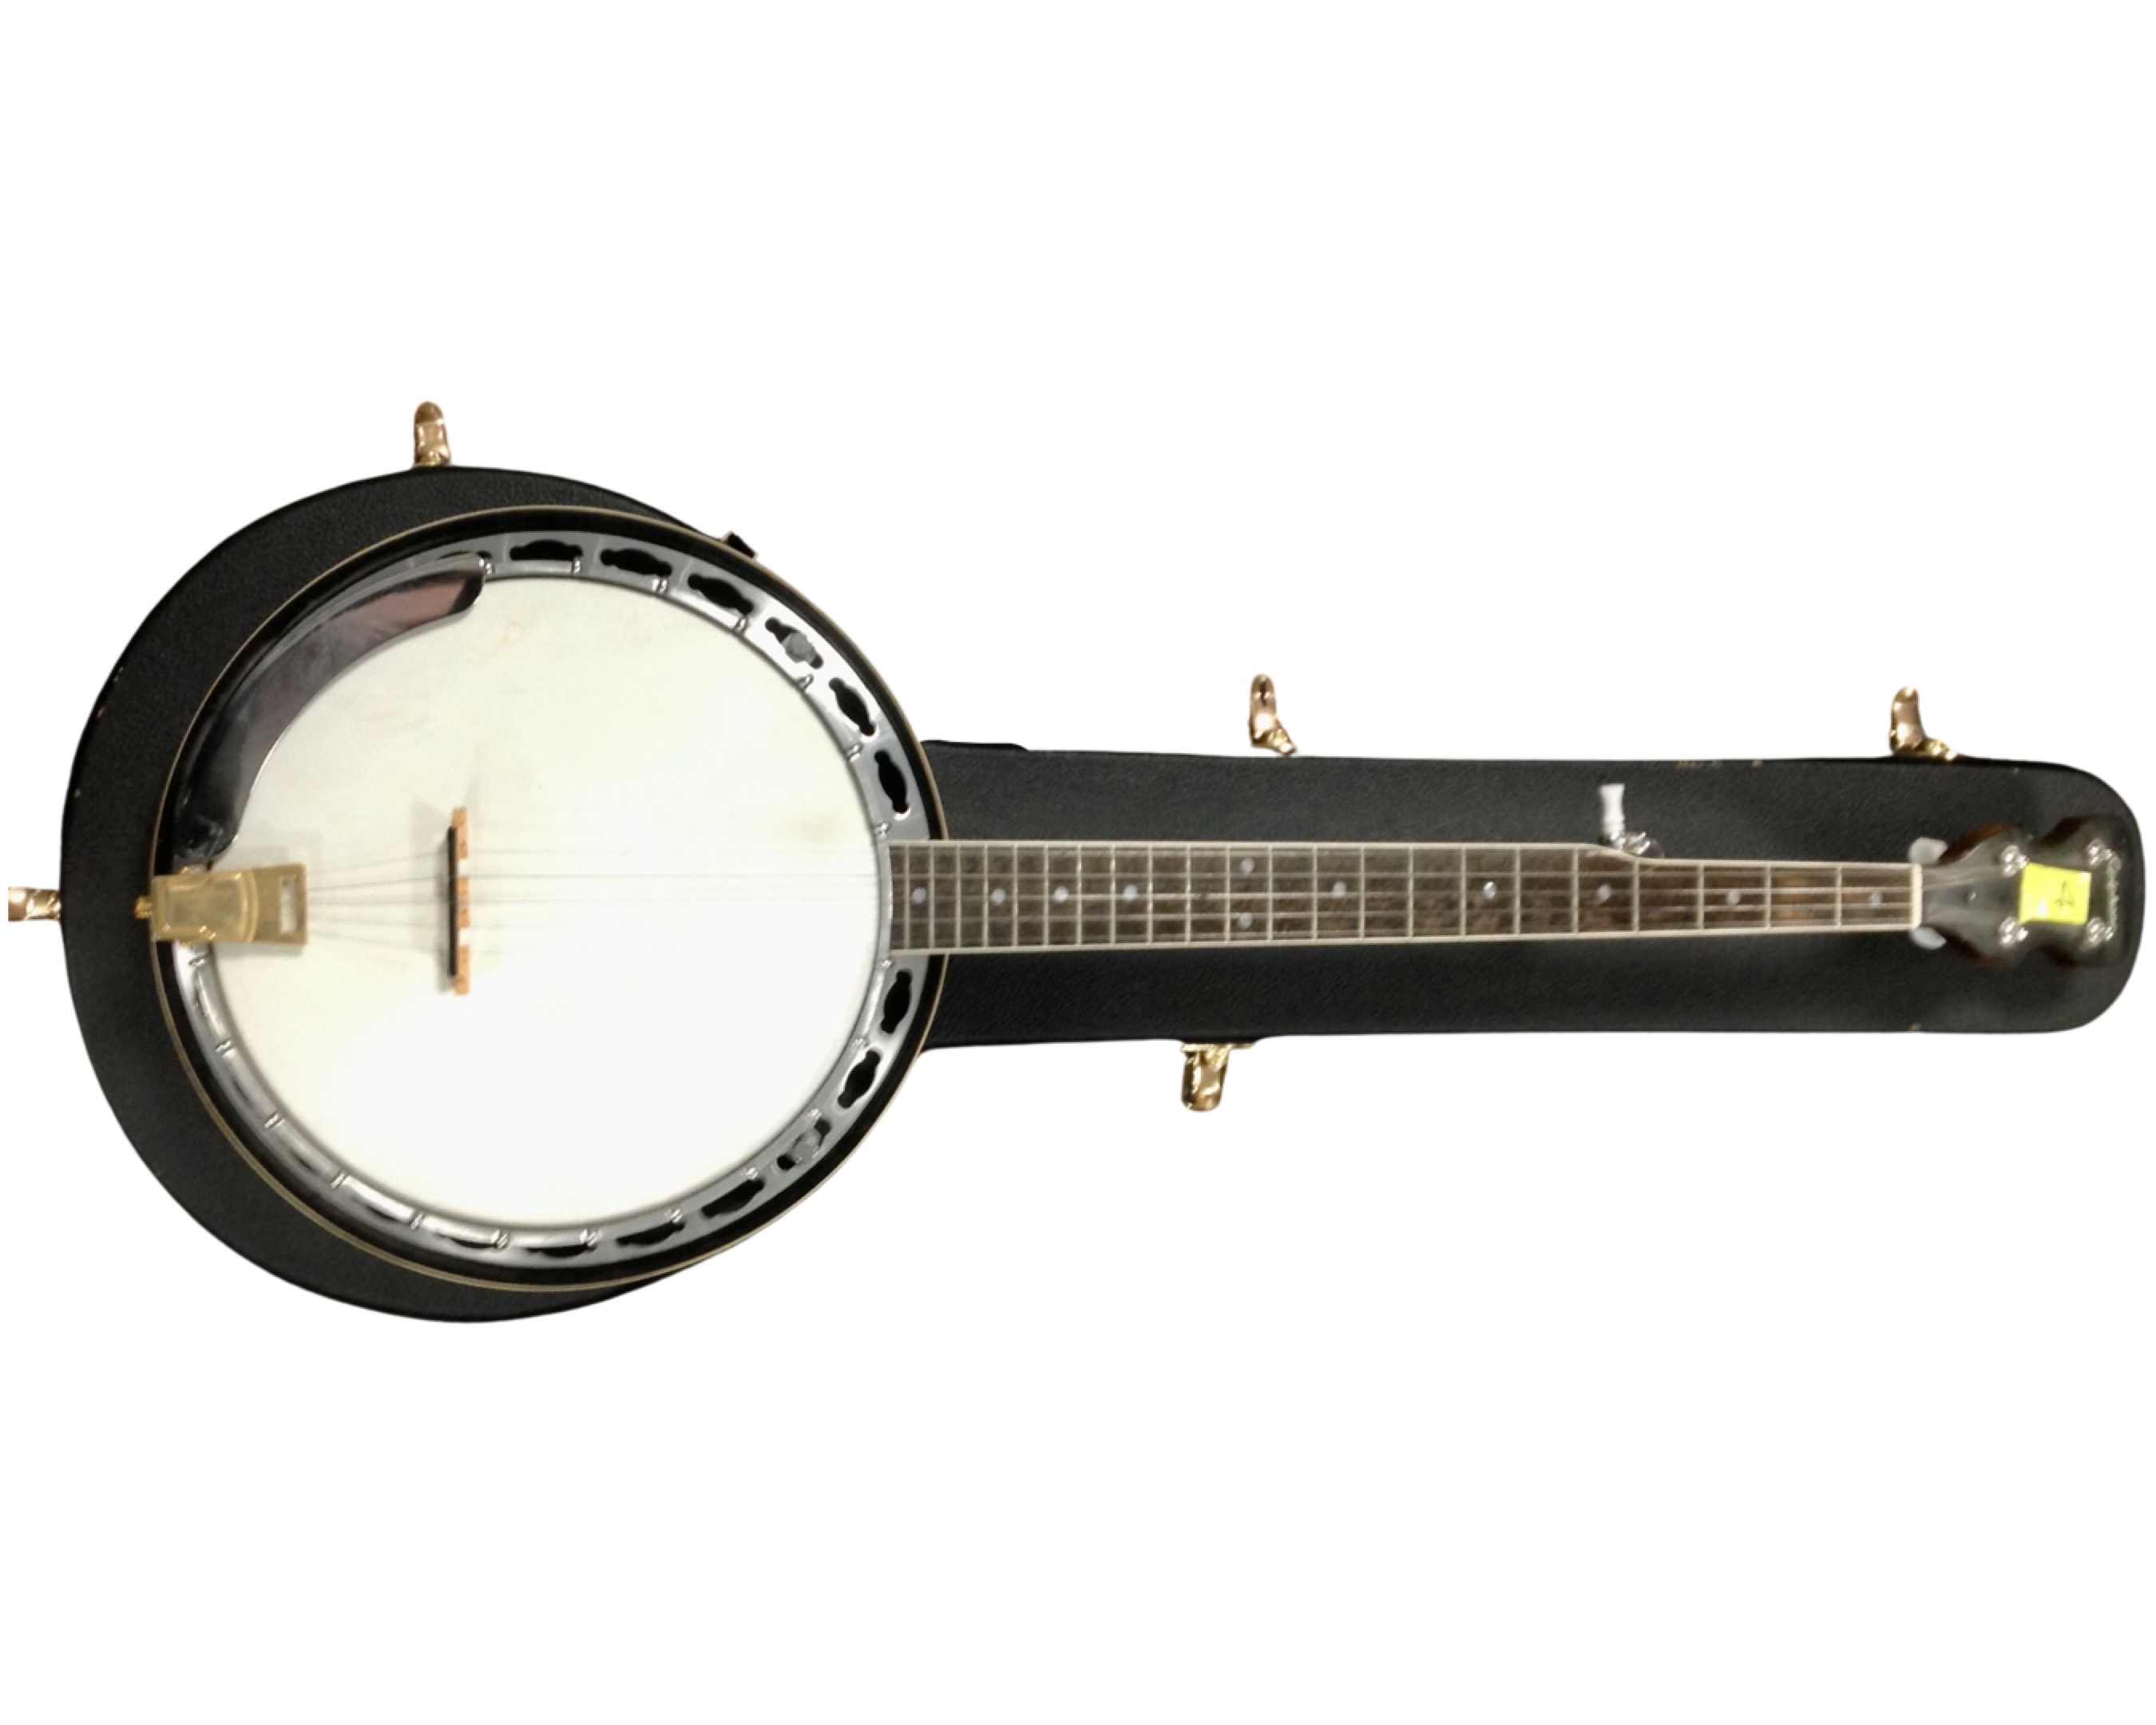 An Epiphone five string banjo